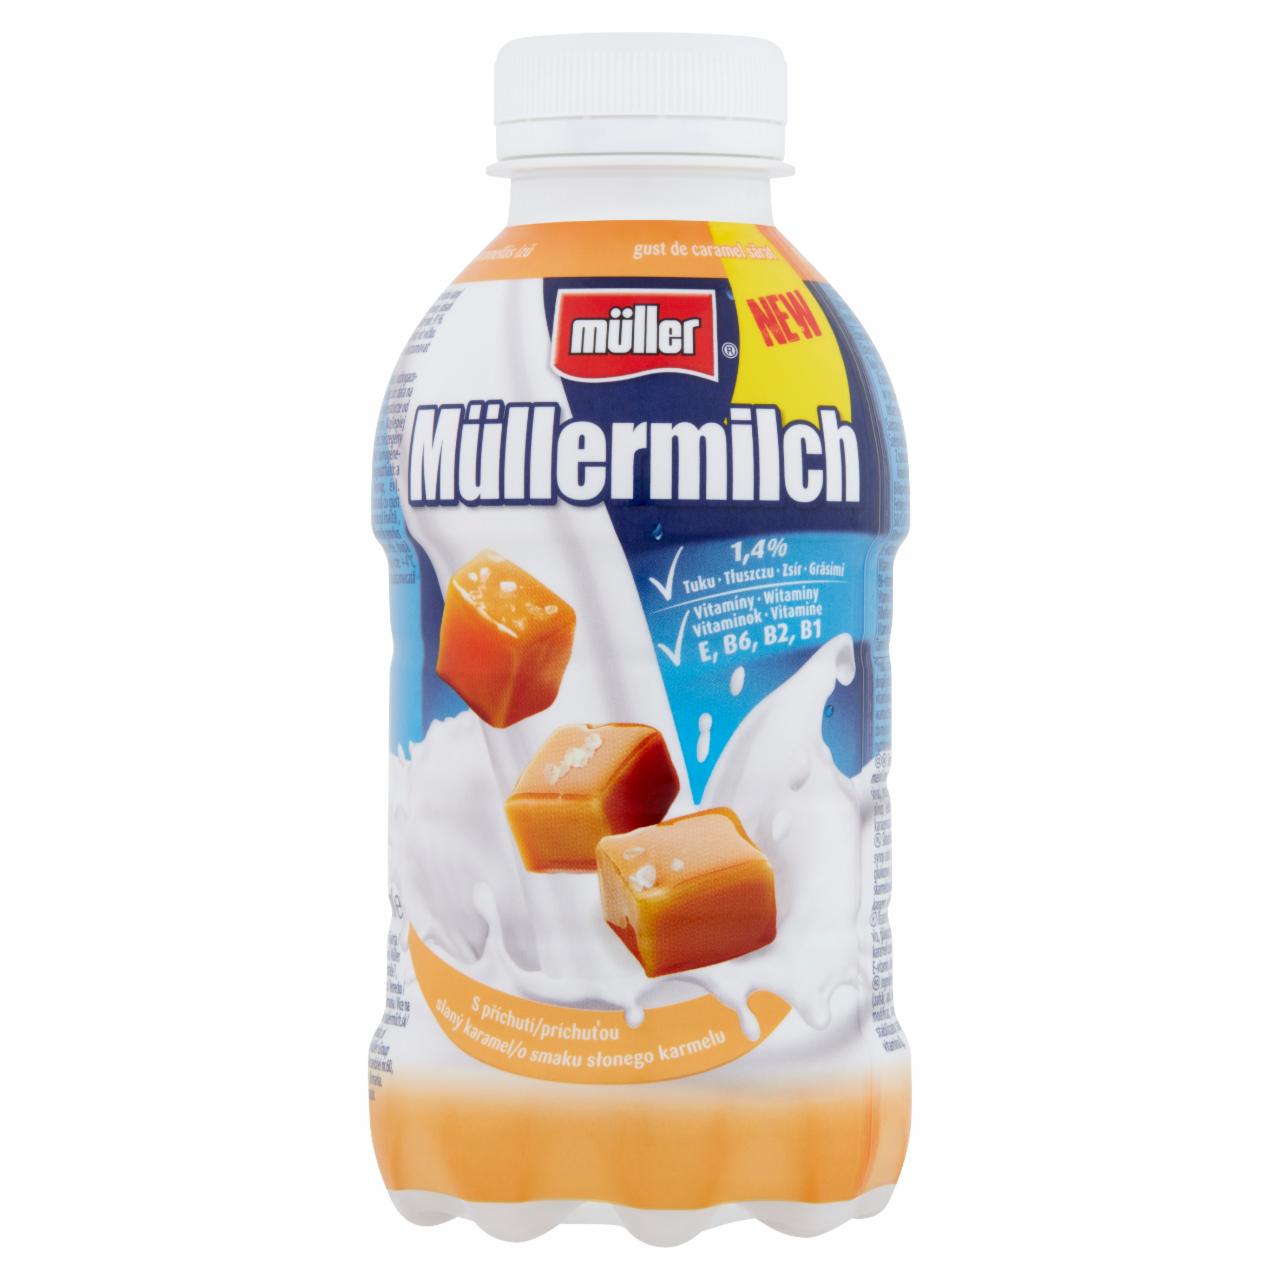 Képek - Müller Müllermilch sós-karamell ízesítésű zsírszegény tejital 377 ml